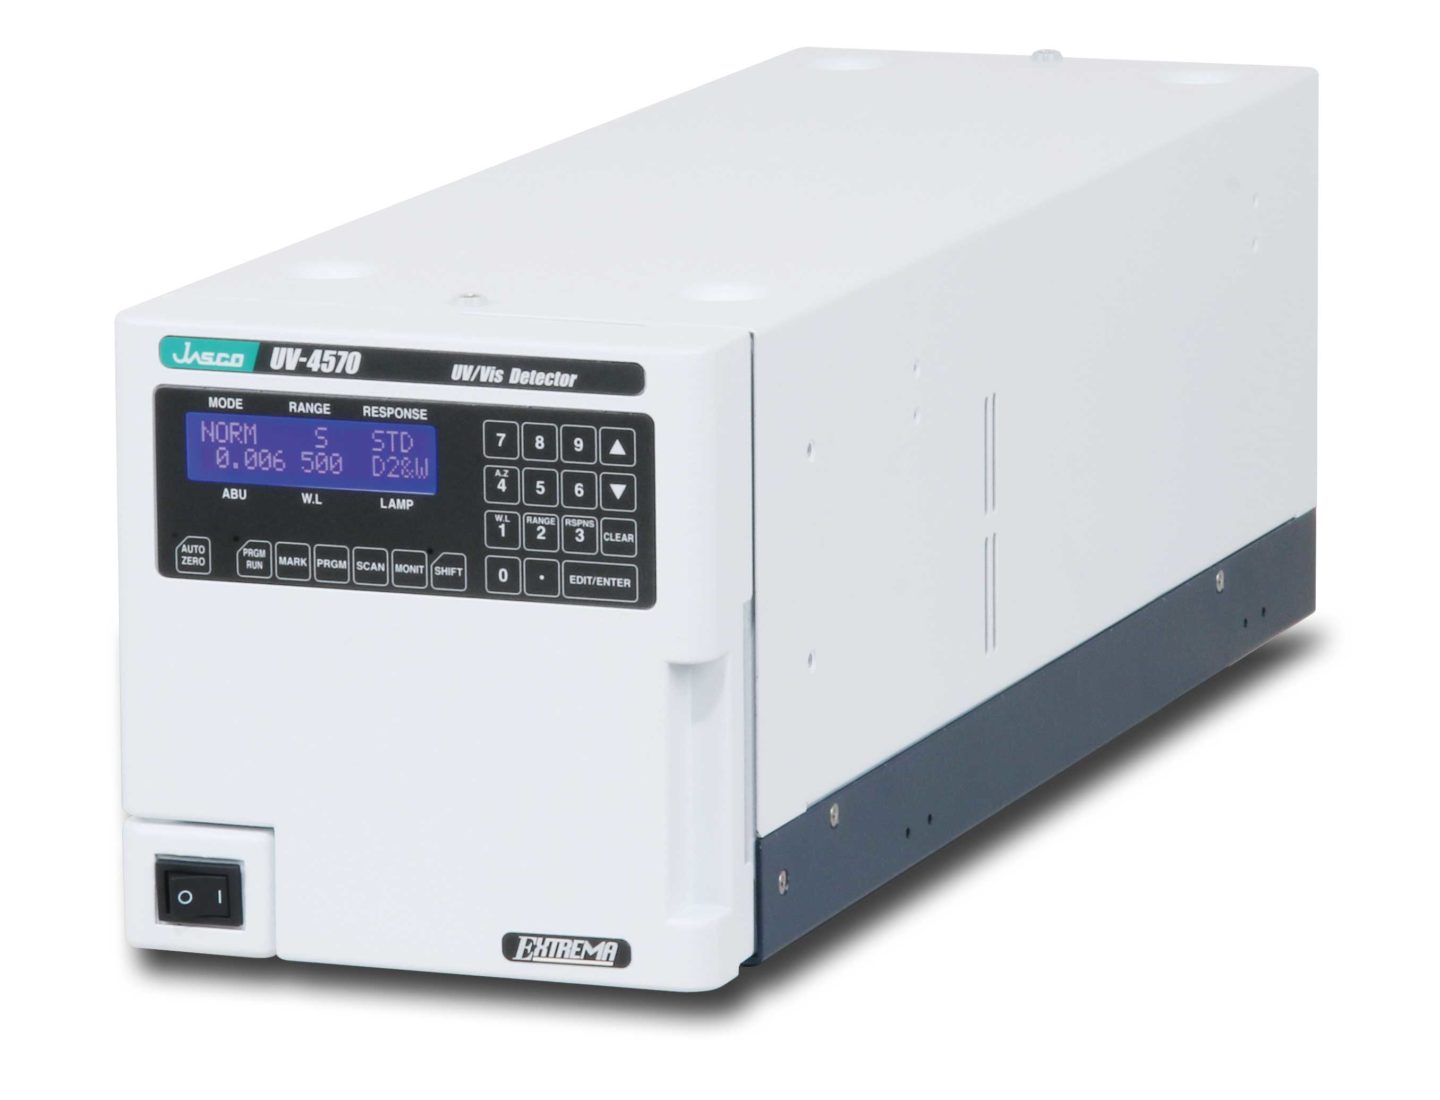 UV-4570 Compact UV-Visible Detector